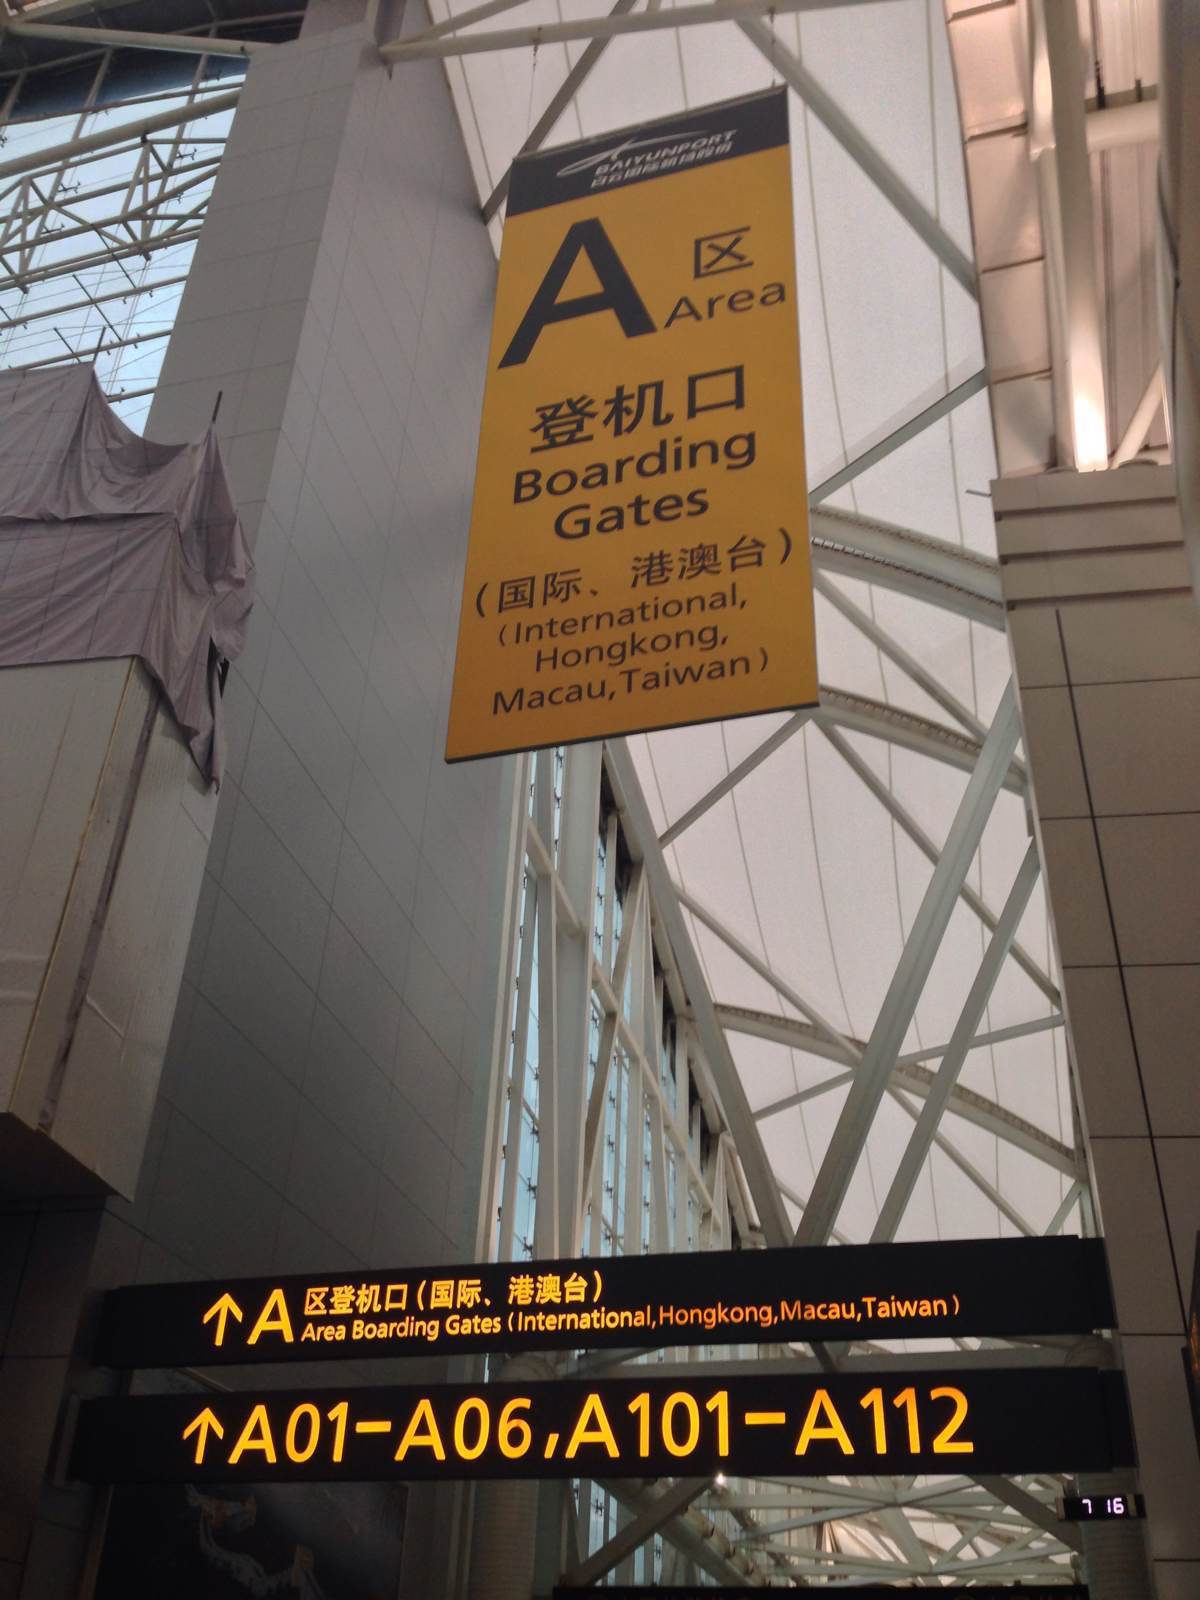 广州白云机场门口图片图片